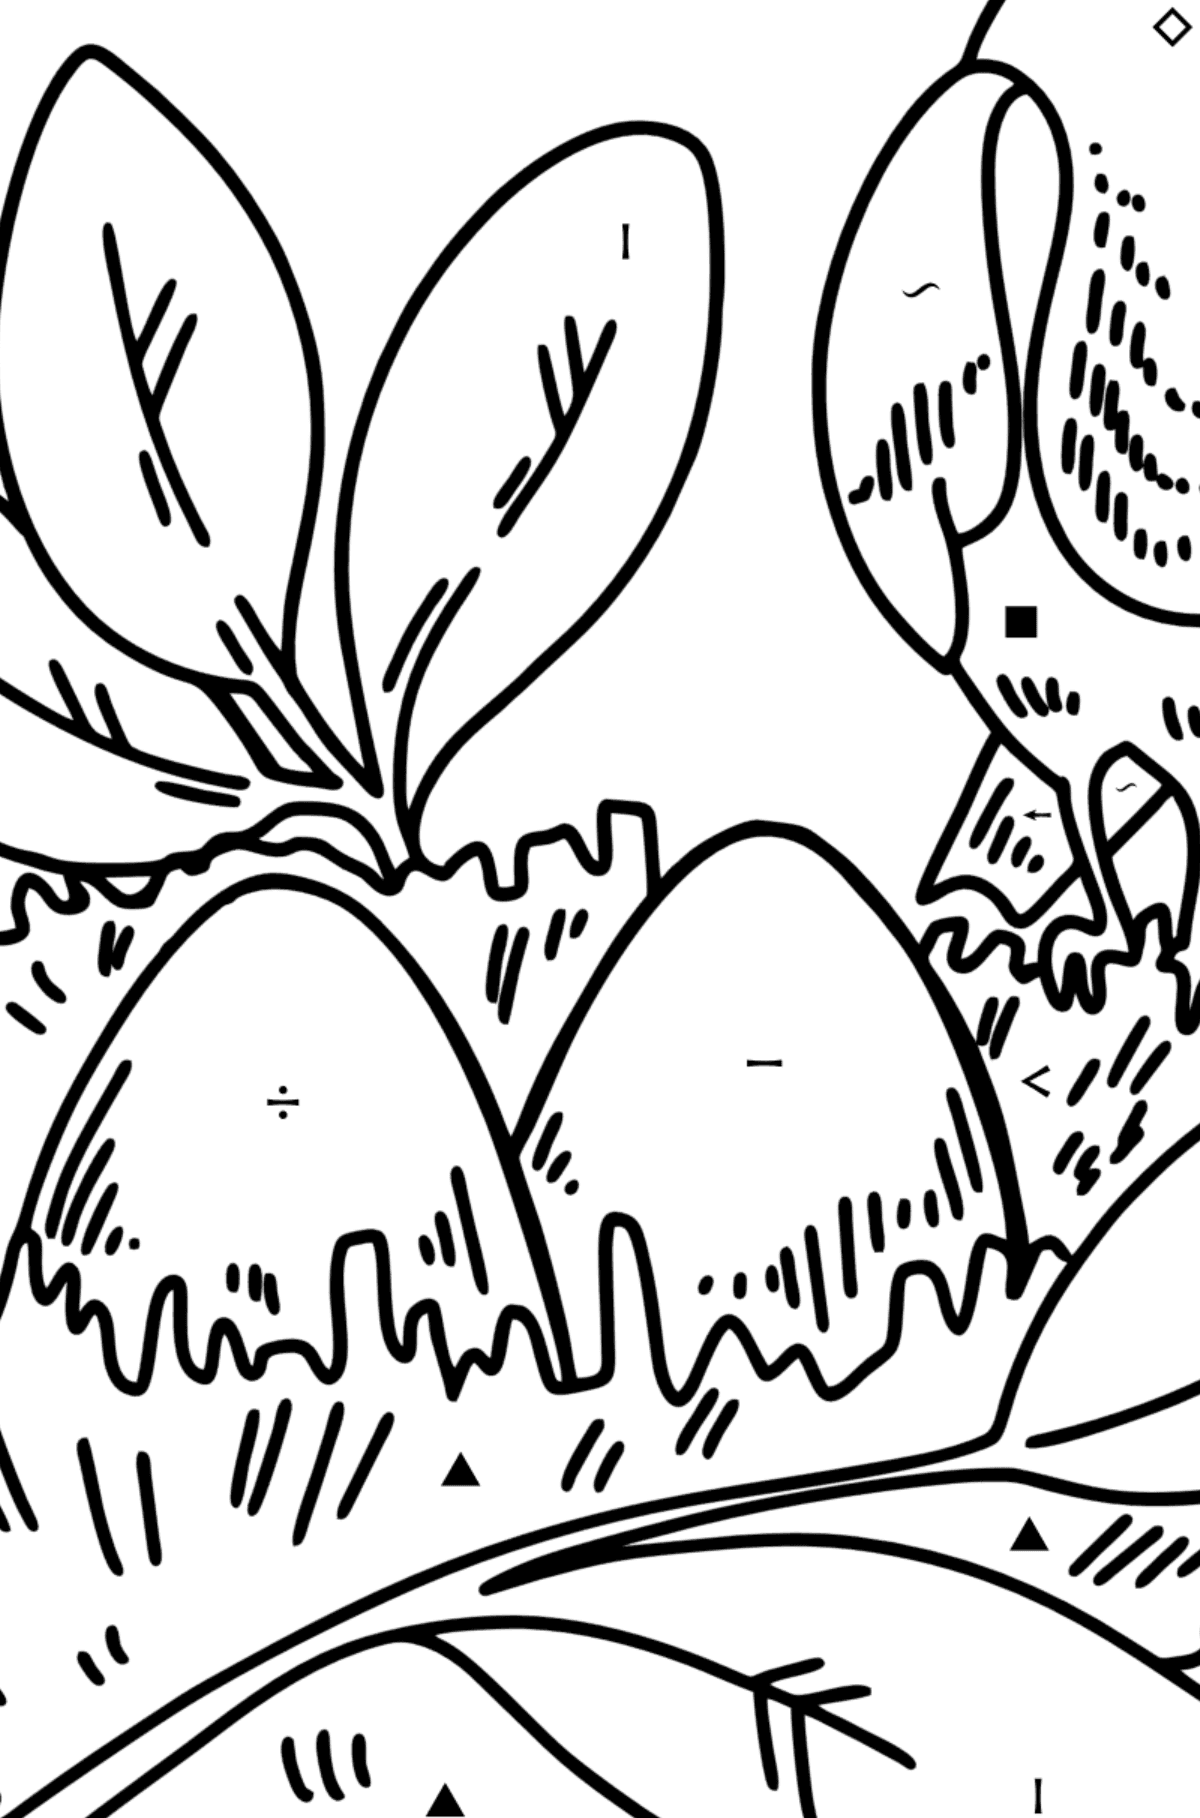 Omalovánka drozdové hnízdo - Omalovánka podle Symbolů pro děti